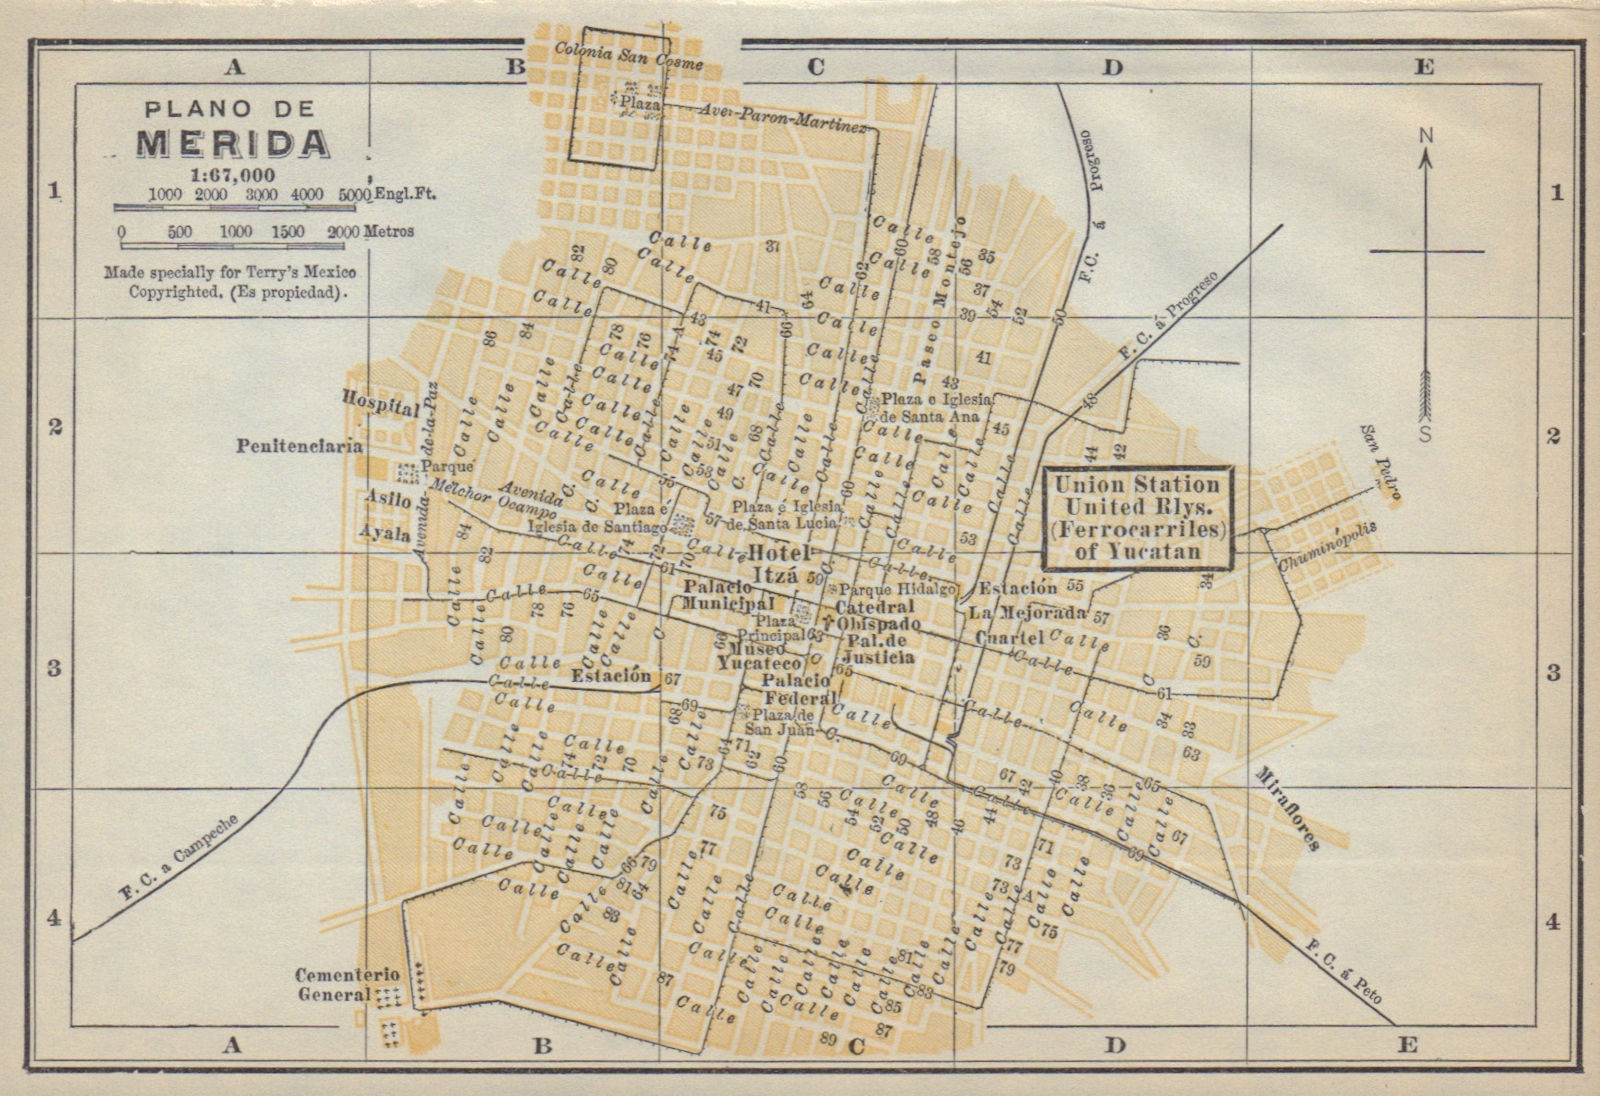 Plano de MERIDA, Mexico. Mapa de la ciudad. City/town plan 1938 old